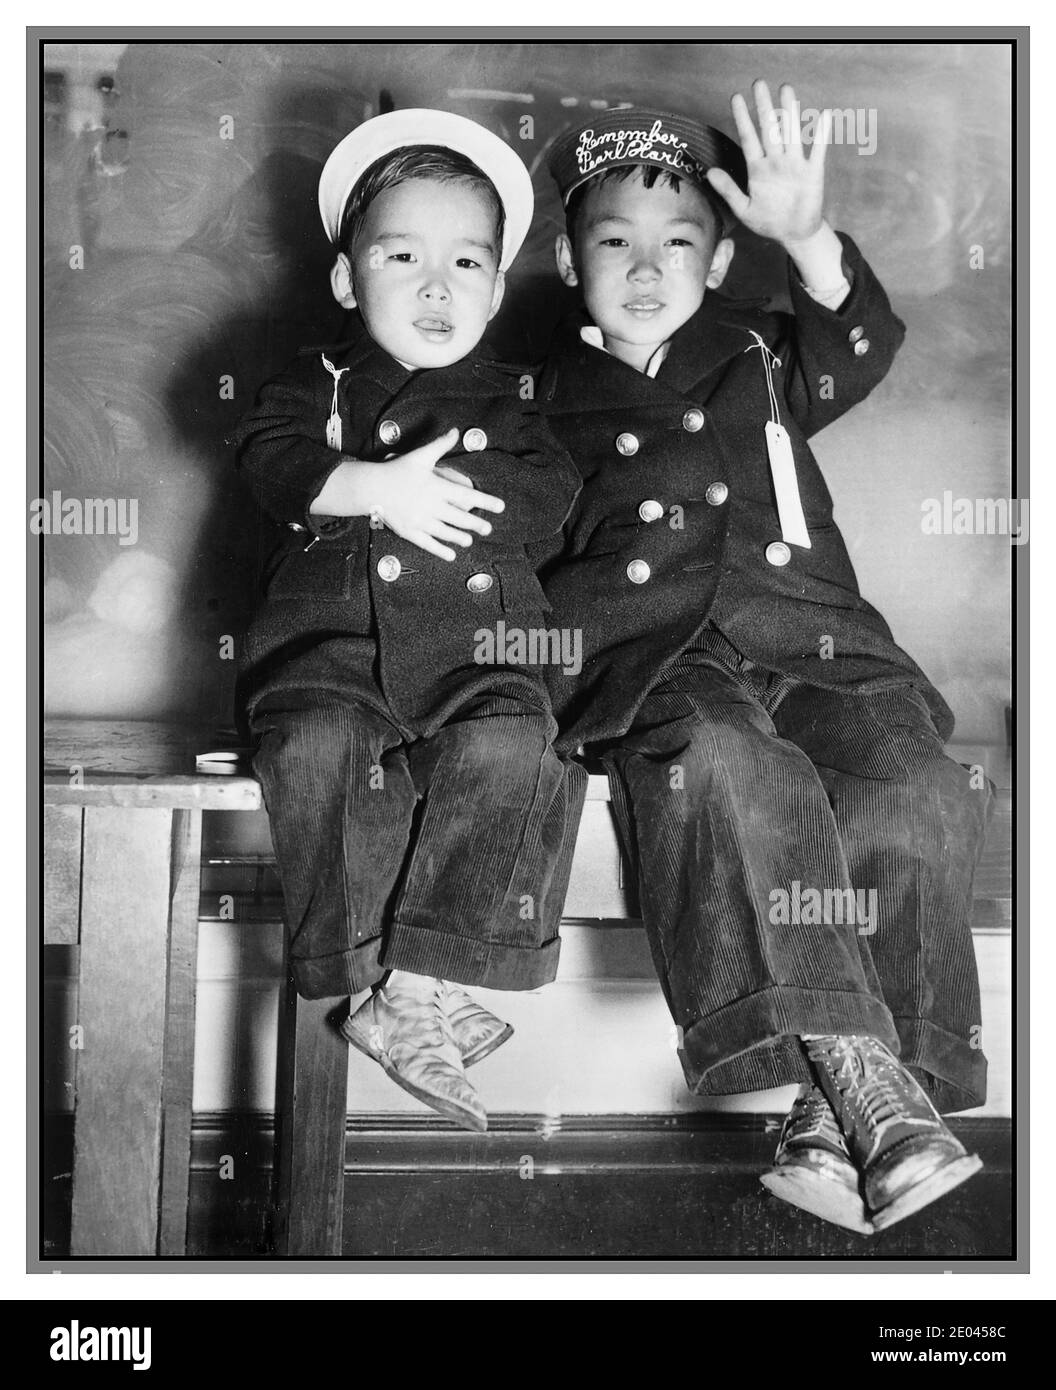 Propagandafoto des 2. Weltkrieges Japanische Evakuierung aus den USA San Francisco (Kalifornien) 1941 Evakuierung - zwei japanische Jungen, einer mit Streifen 'Remember Pearl Harbor' auf dem Hut, winken Abschied [während] warten auf den Bus USA. Armee. Signal Corps.[1942] - Evakuierungen--Kalifornien--San Francisco-1940-1950 - Jungen--Kalifornien--San Francisco-1940-1950 - Weltkrieg, 1939-1945--Japanische Amerikaner--Kalifornien--San Francisco Ankunft und Abreise--Kalifornien--San Francisco-1940-1950 Fotodrucke--1940-1950. Stockfoto